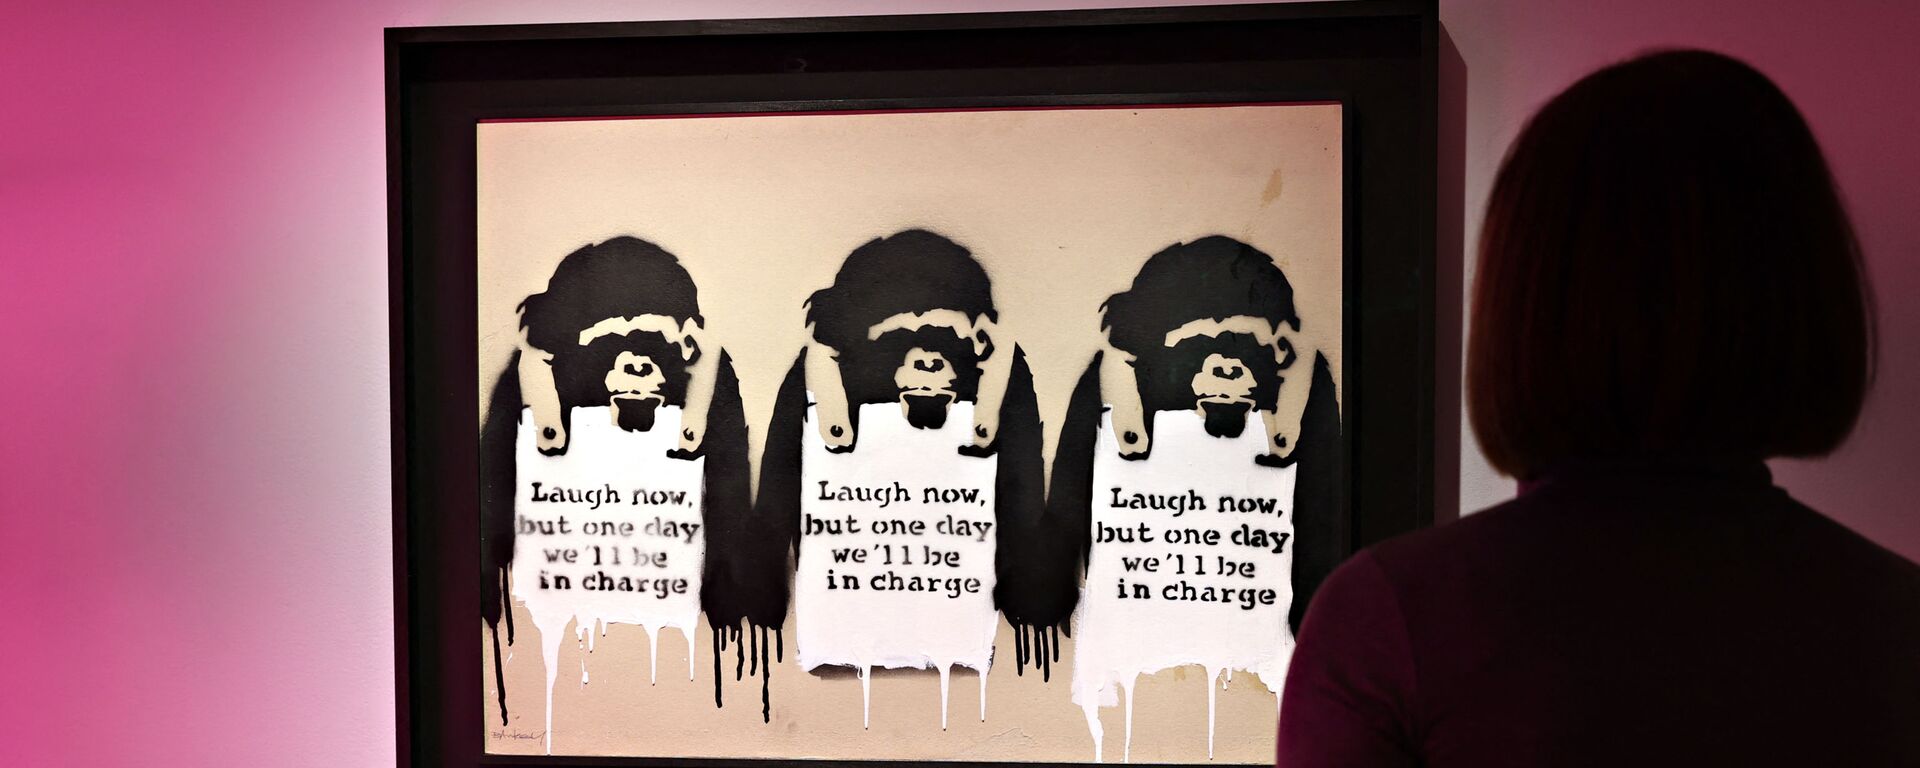 Bức tranh của nghệ sĩ đường phố người Anh Banksy Laugh Now, But One Day We Will Be in Charge. - Sputnik Việt Nam, 1920, 12.05.2021